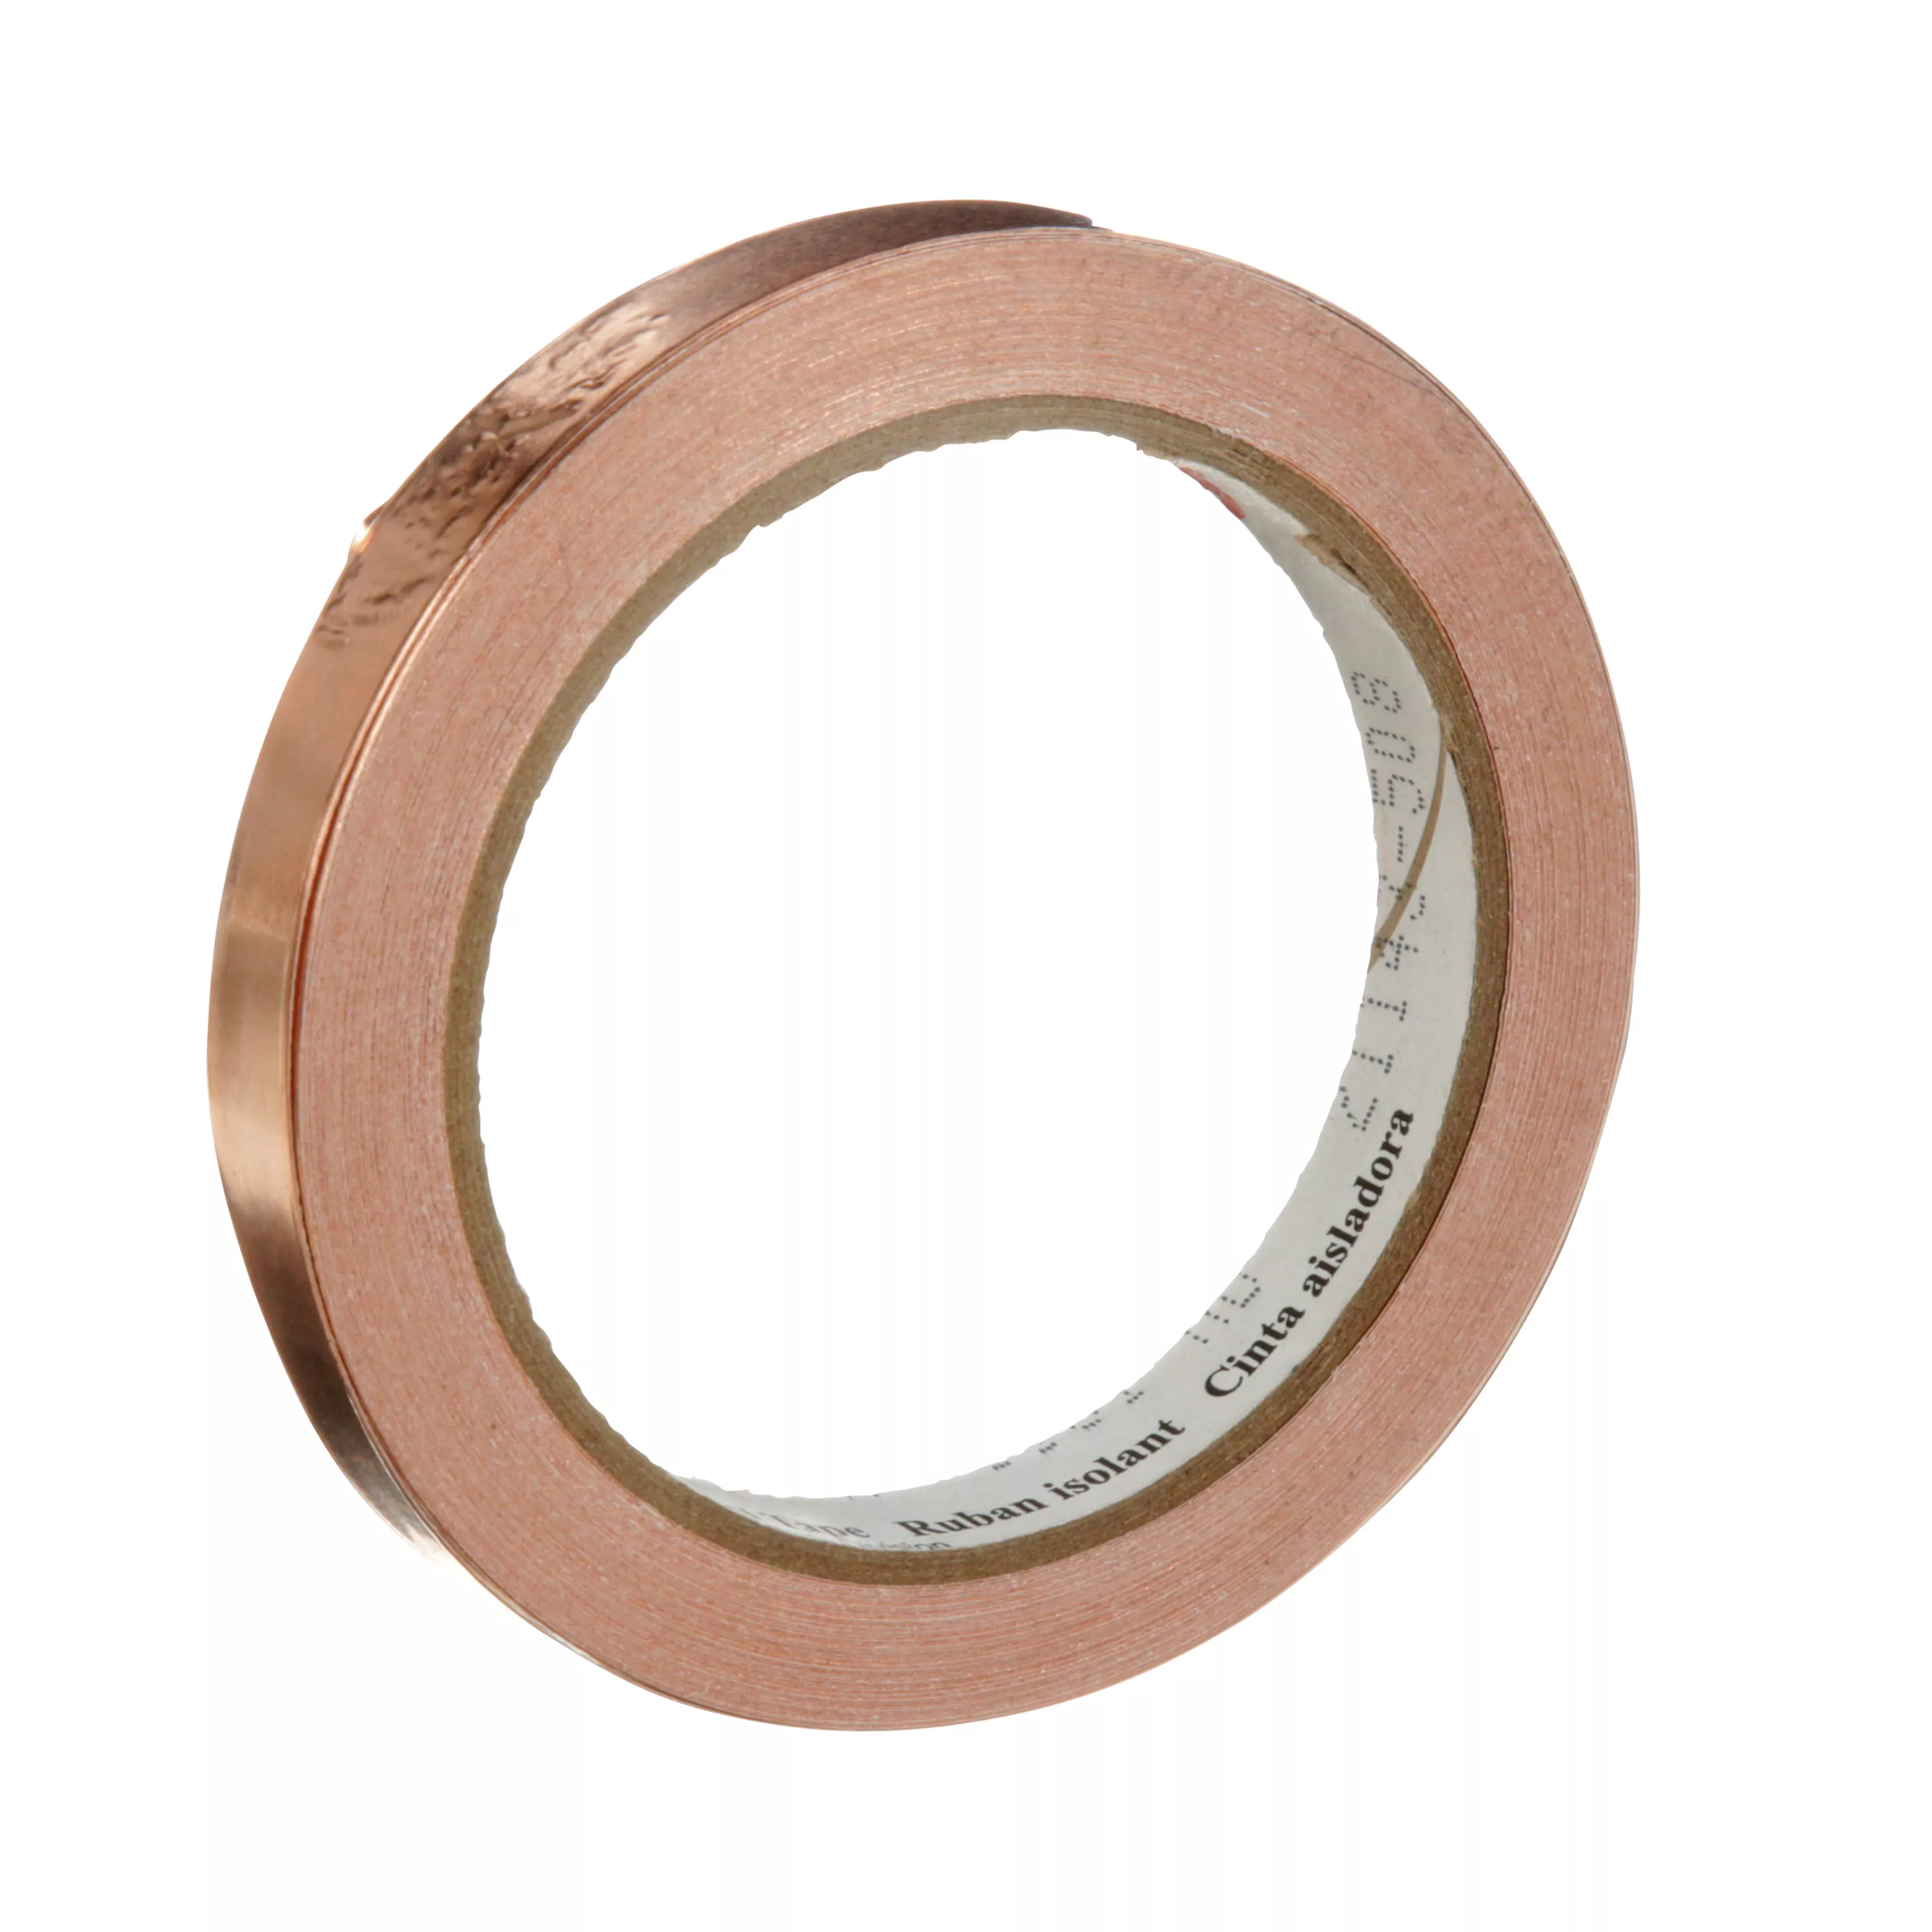 3M™ EMI Copper Foil Shielding Tape 1181, 1/2 in x 18 yd (12.70 mm x 16.5
m), 18/case